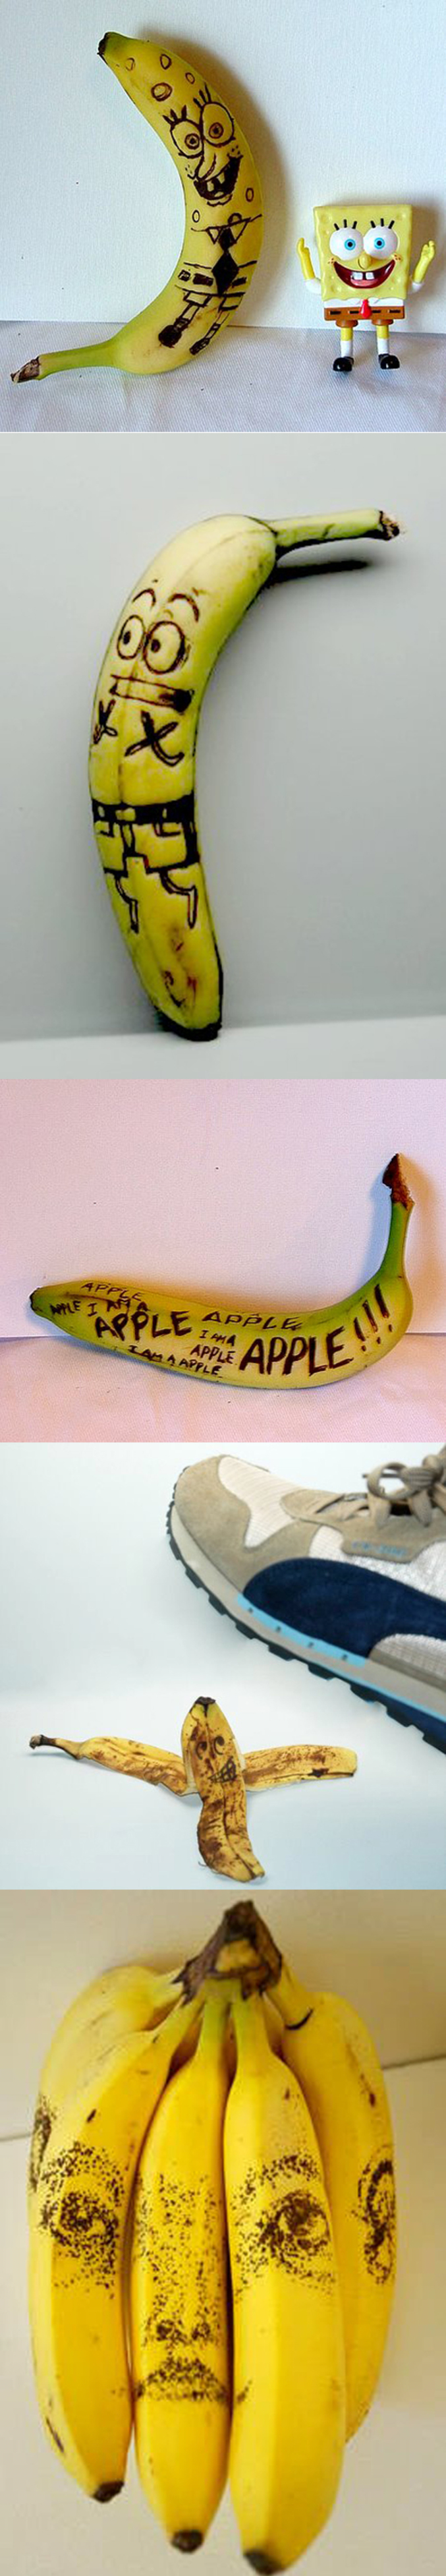 Une série de dessins sur des bananes